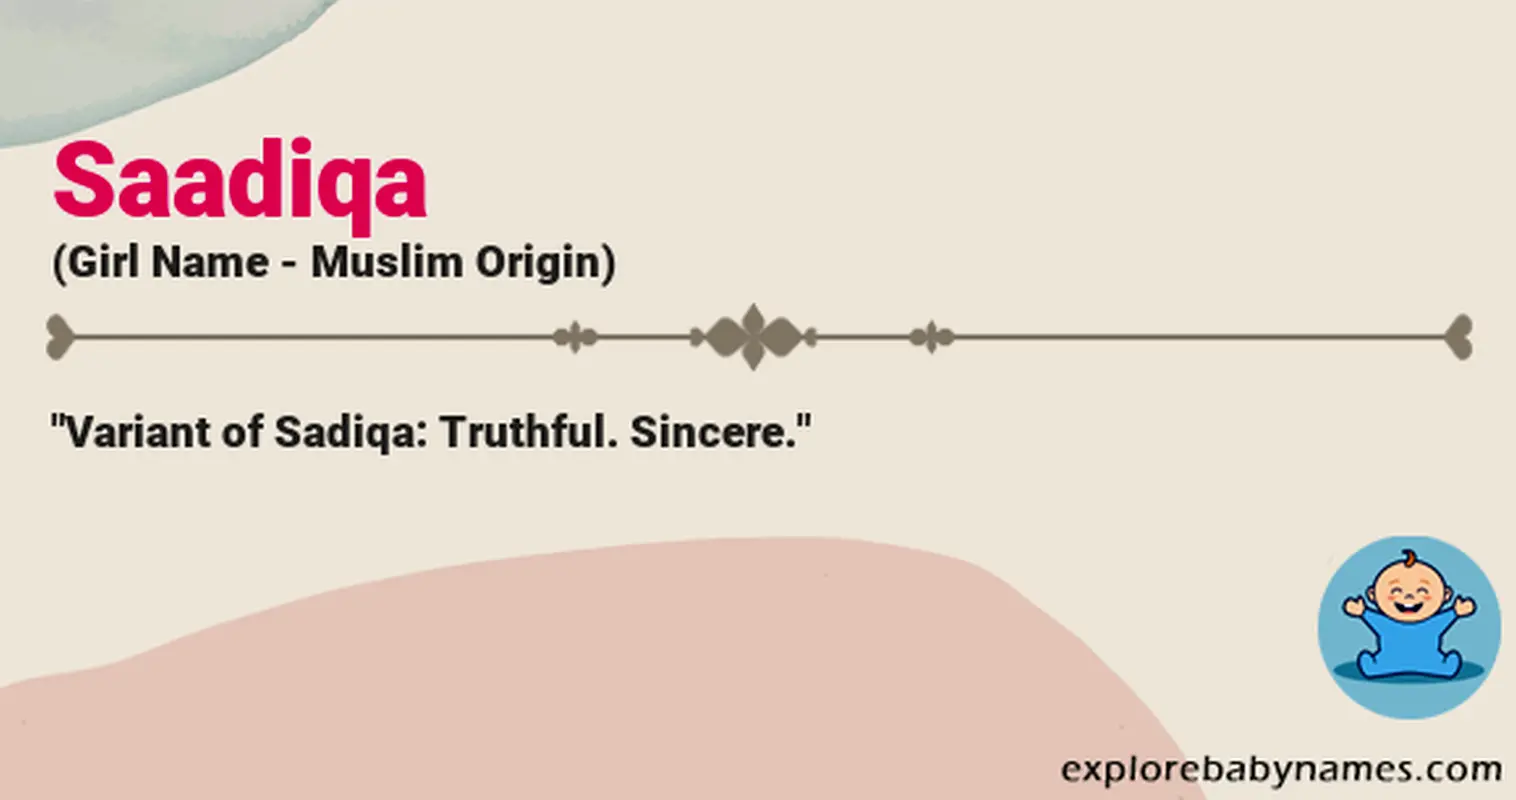 Meaning of Saadiqa